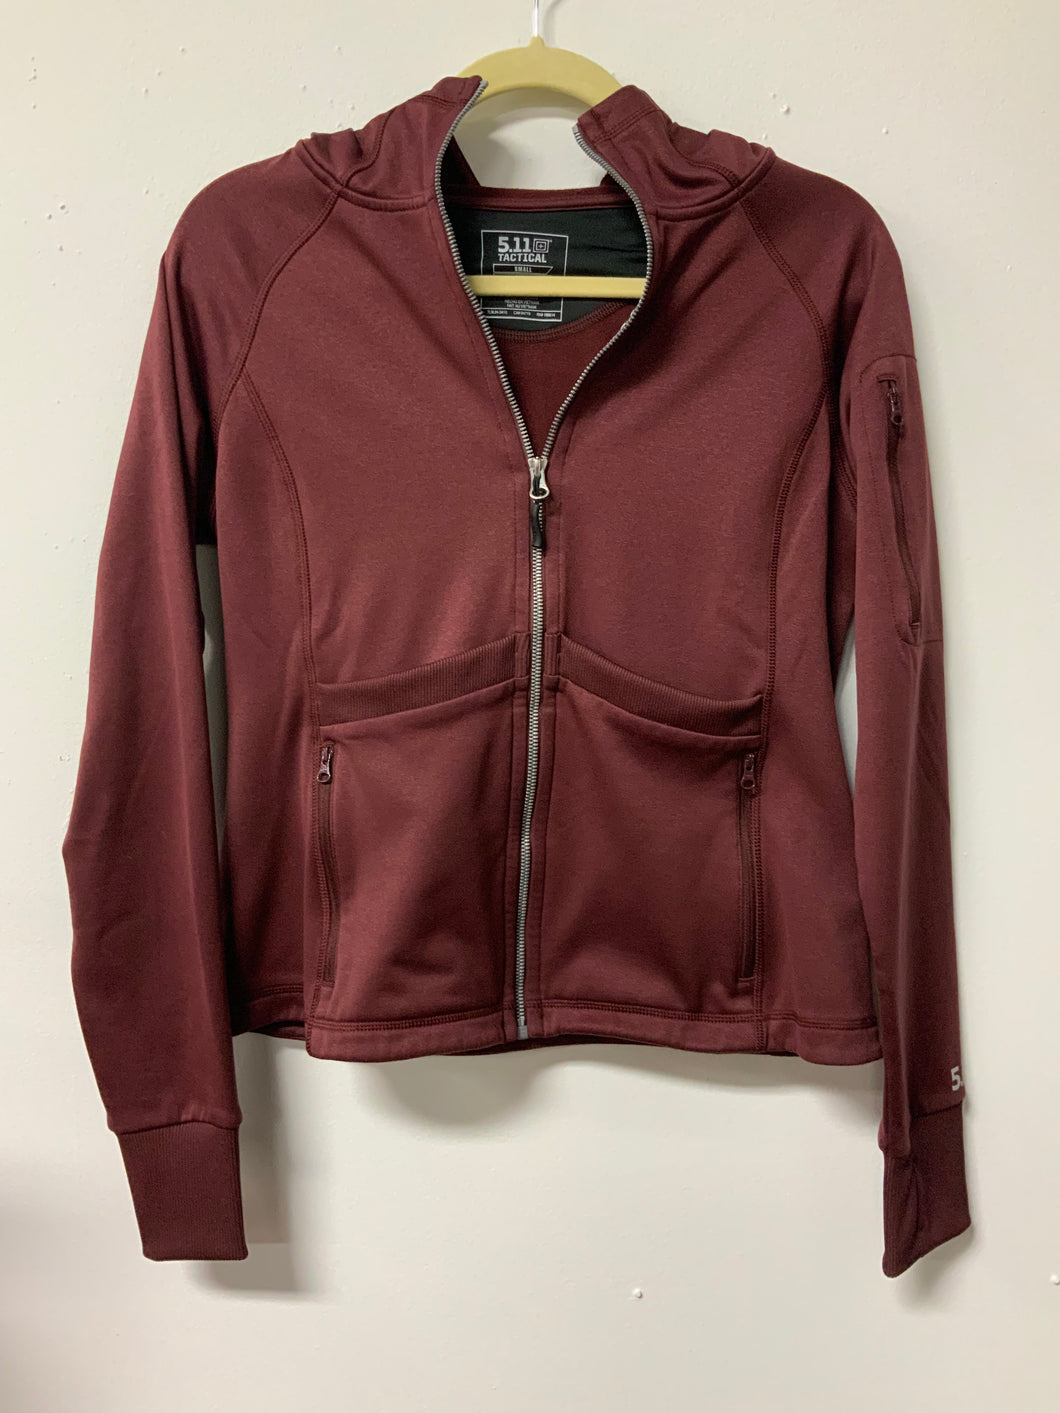 511 Tactical (S) maroon zipper jacket